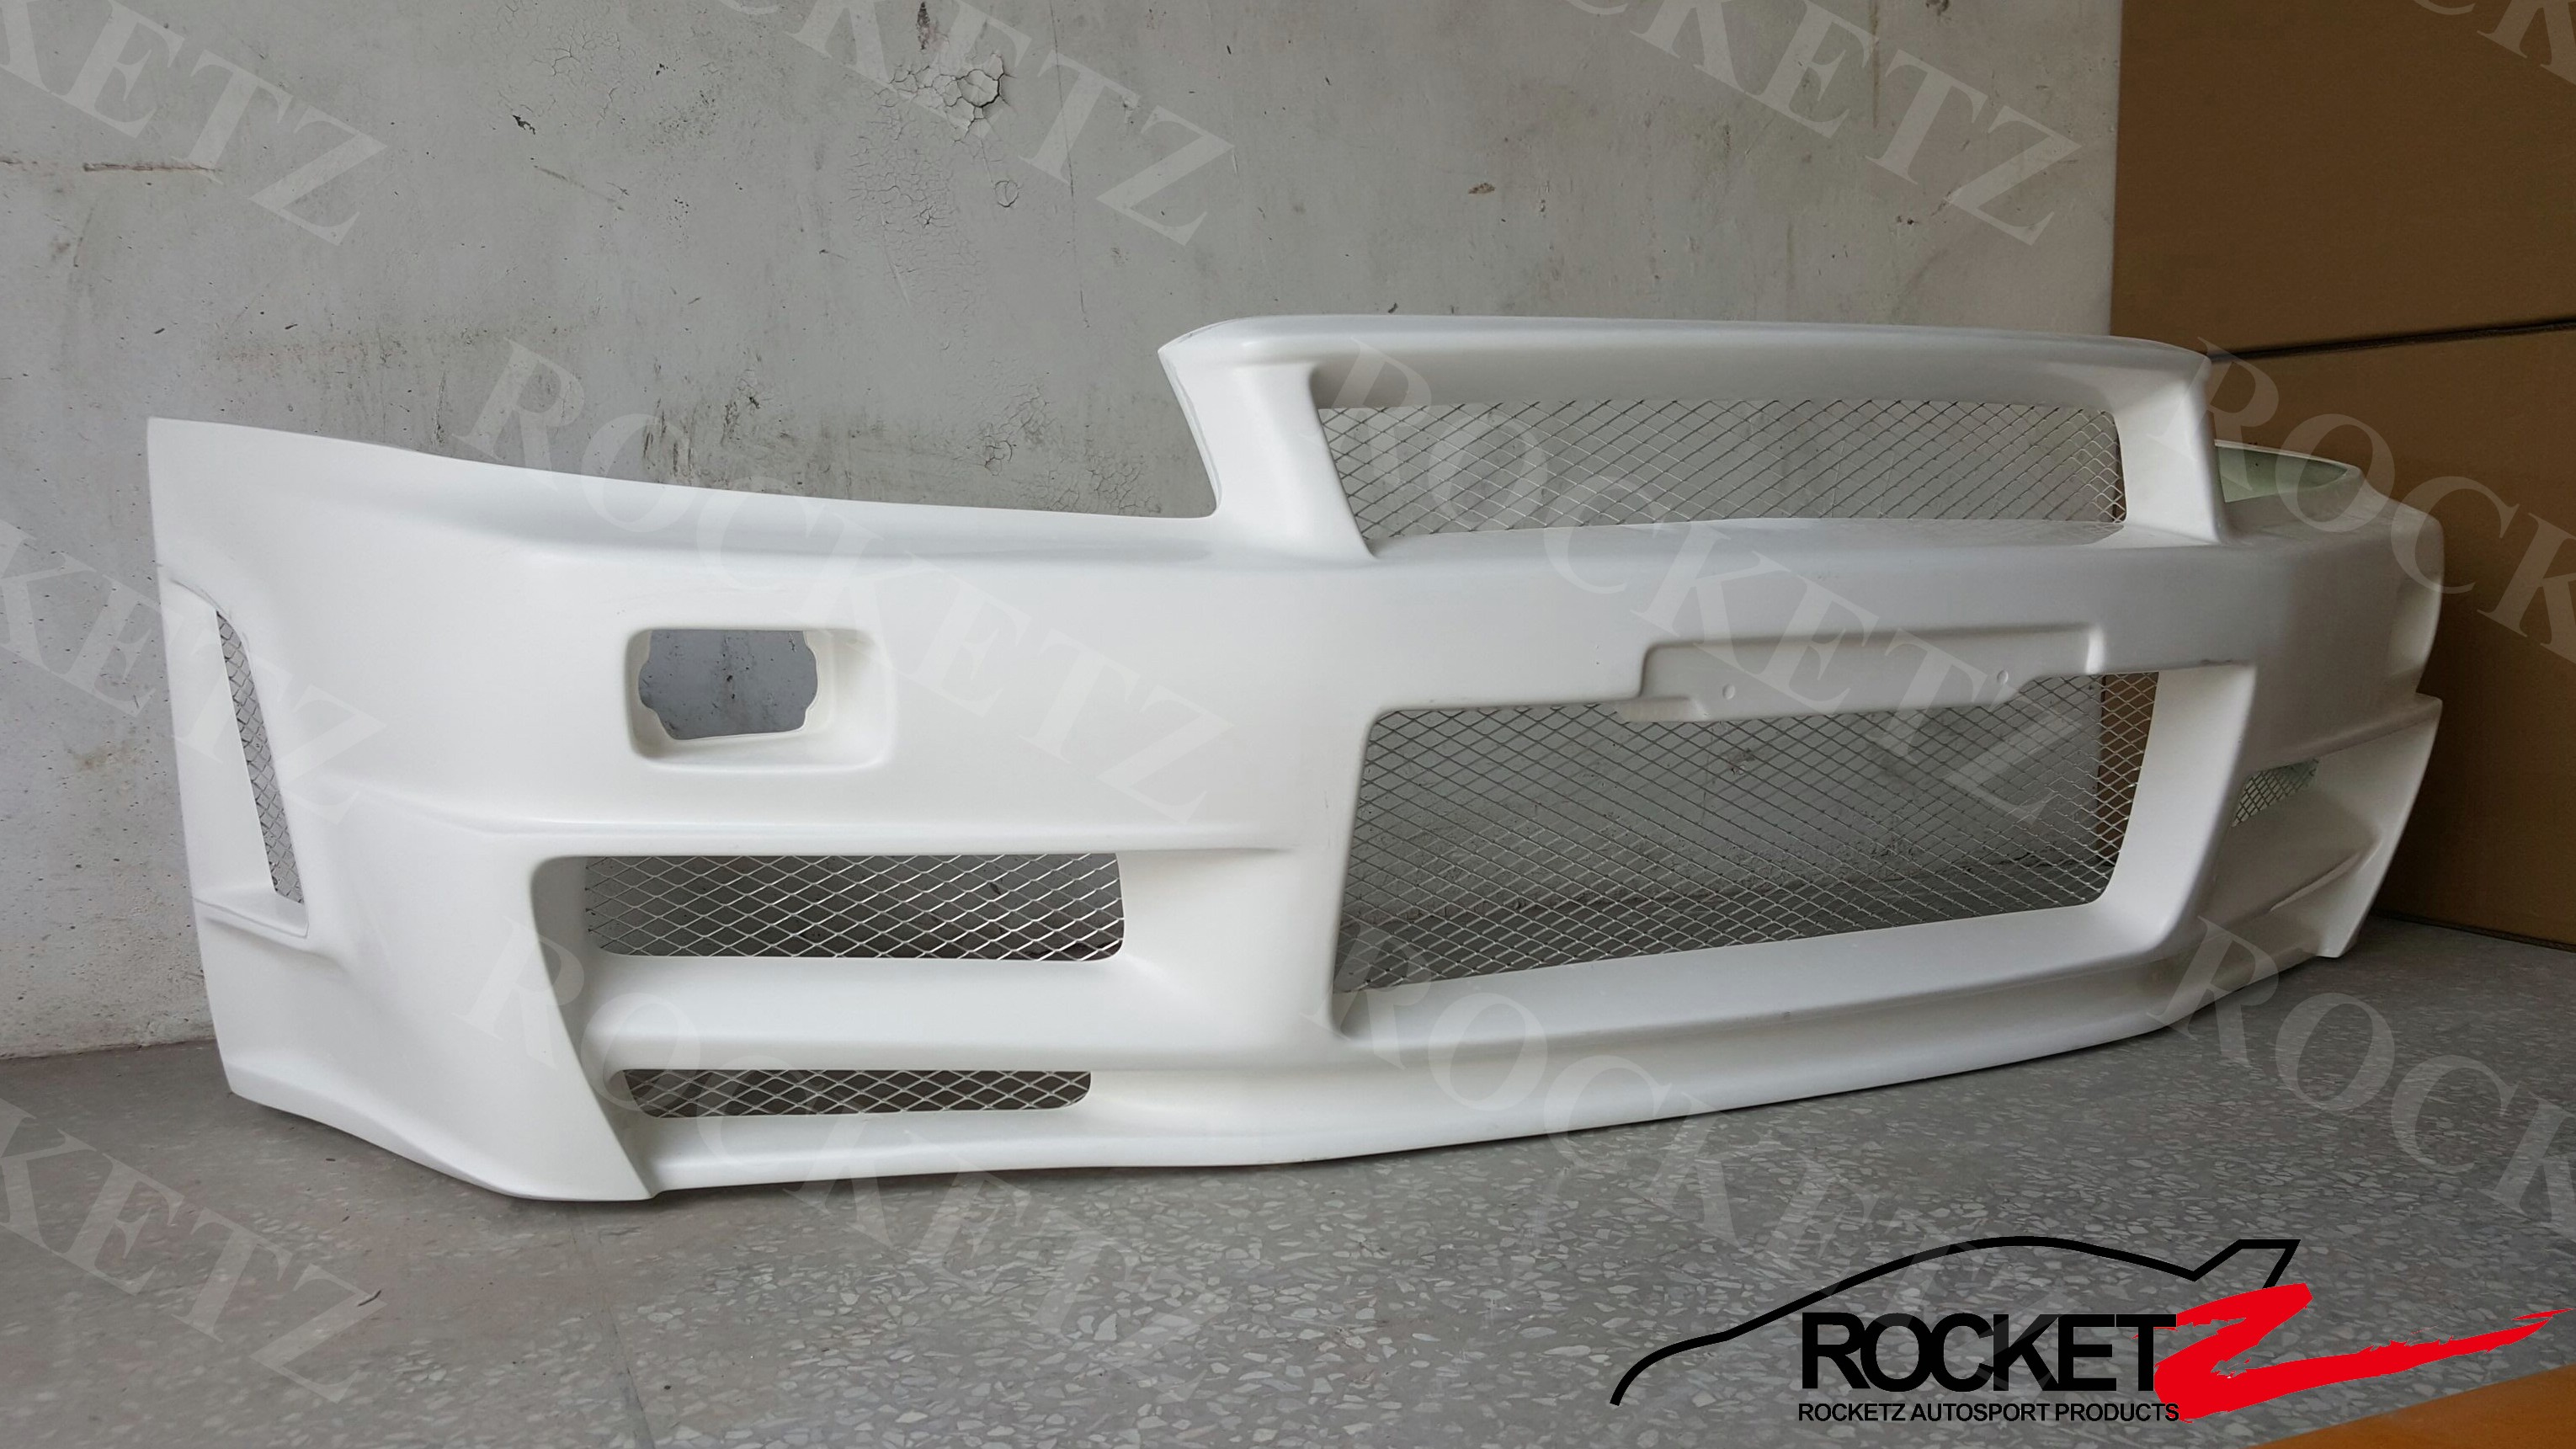 R34 Gtr Frp Z Tune Style Front Bumper Rocketz Autosport